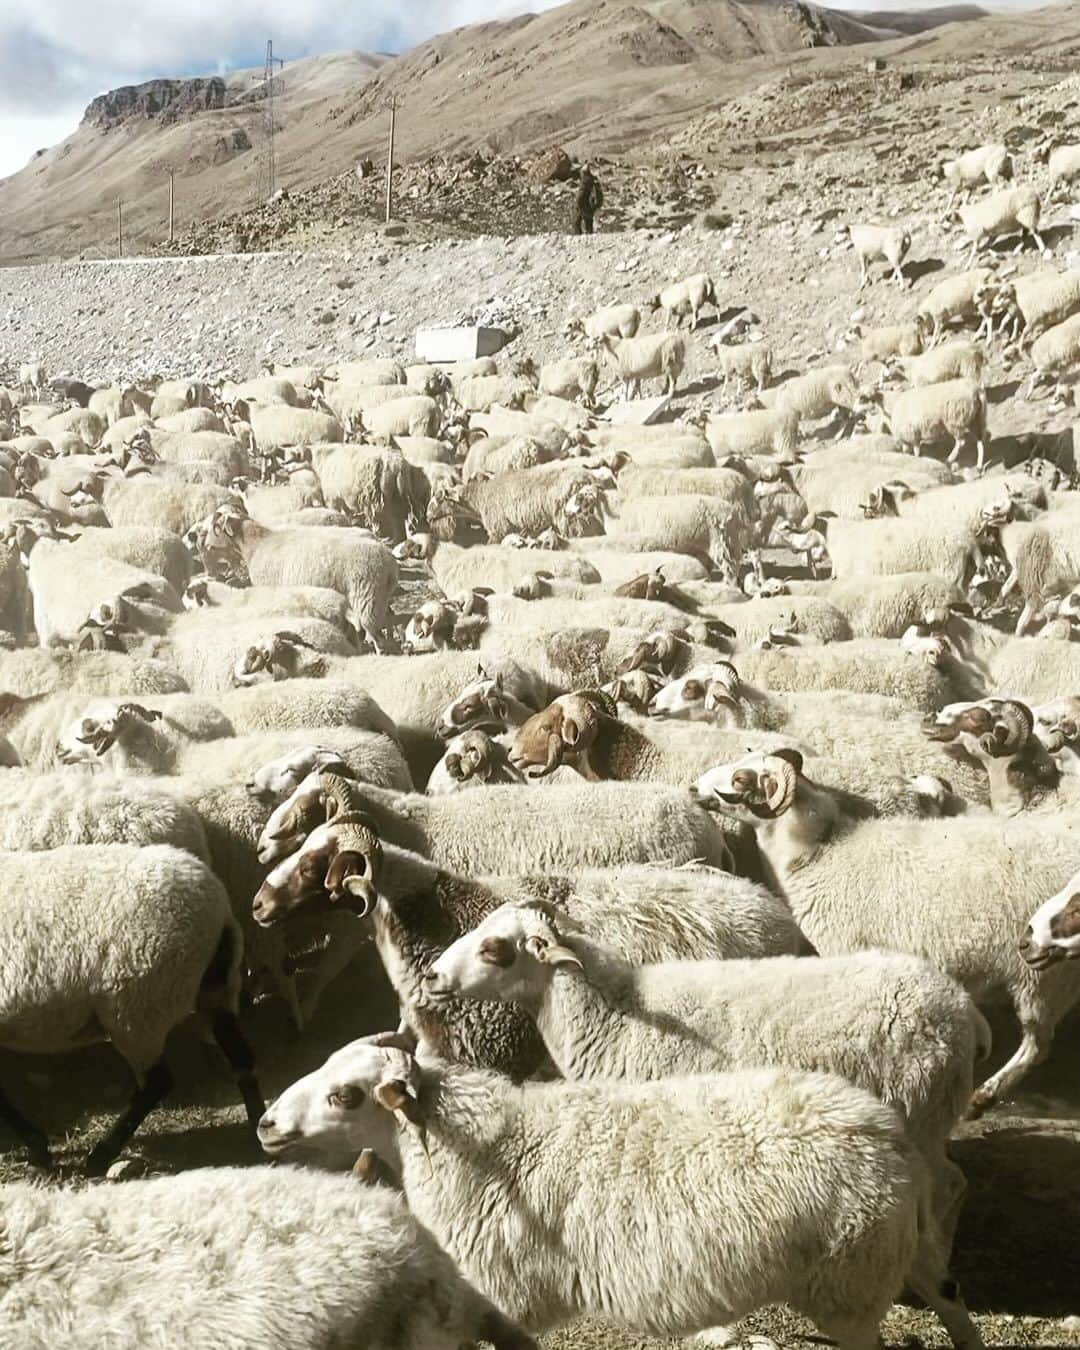 石川直樹のインスタグラム：「For Himalayas⑪ We arrived #ChoOyu BC, #Tibet. チョオユーBC着。標高4800m。テントを立てていたら、突然#羊飼い が羊の群れを連れてきてテントサイトが羊の糞尿まみれに…😭羊たちの奥にある、雲に隠れ気味の山が#チョオユー です。 明日にはABC（Advanced Base Camp）に移動します。実質ABCがベースキャンプとなるでしょう。ABCは標高5700mと言われたけど、本当にそんなに高いのかな。 . 3枚目は今までの8000m峰の登頂日。自分が注視しているのは、アンナプルナからナンガのあいだの日数、79日間。ナンガは順応のためのローテーションなし、ワンプッシュで登りました。すなわち、自分の体には約2ヶ月半、高所順応が残っていた。 G1に登頂したのが7月26日、その2ヶ月半後は10月9日あたり。それまでならチョオユーに、順応なしのワンプッシュで登れるんじゃないか、と。 2週間程度で順応はなくなる、という研究結果もありますが、どうなのか。高所順応と高山病に関しては、今なお個人的に研究中です。 . 明日ABCに入ると、音信不通になる可能性高し。」